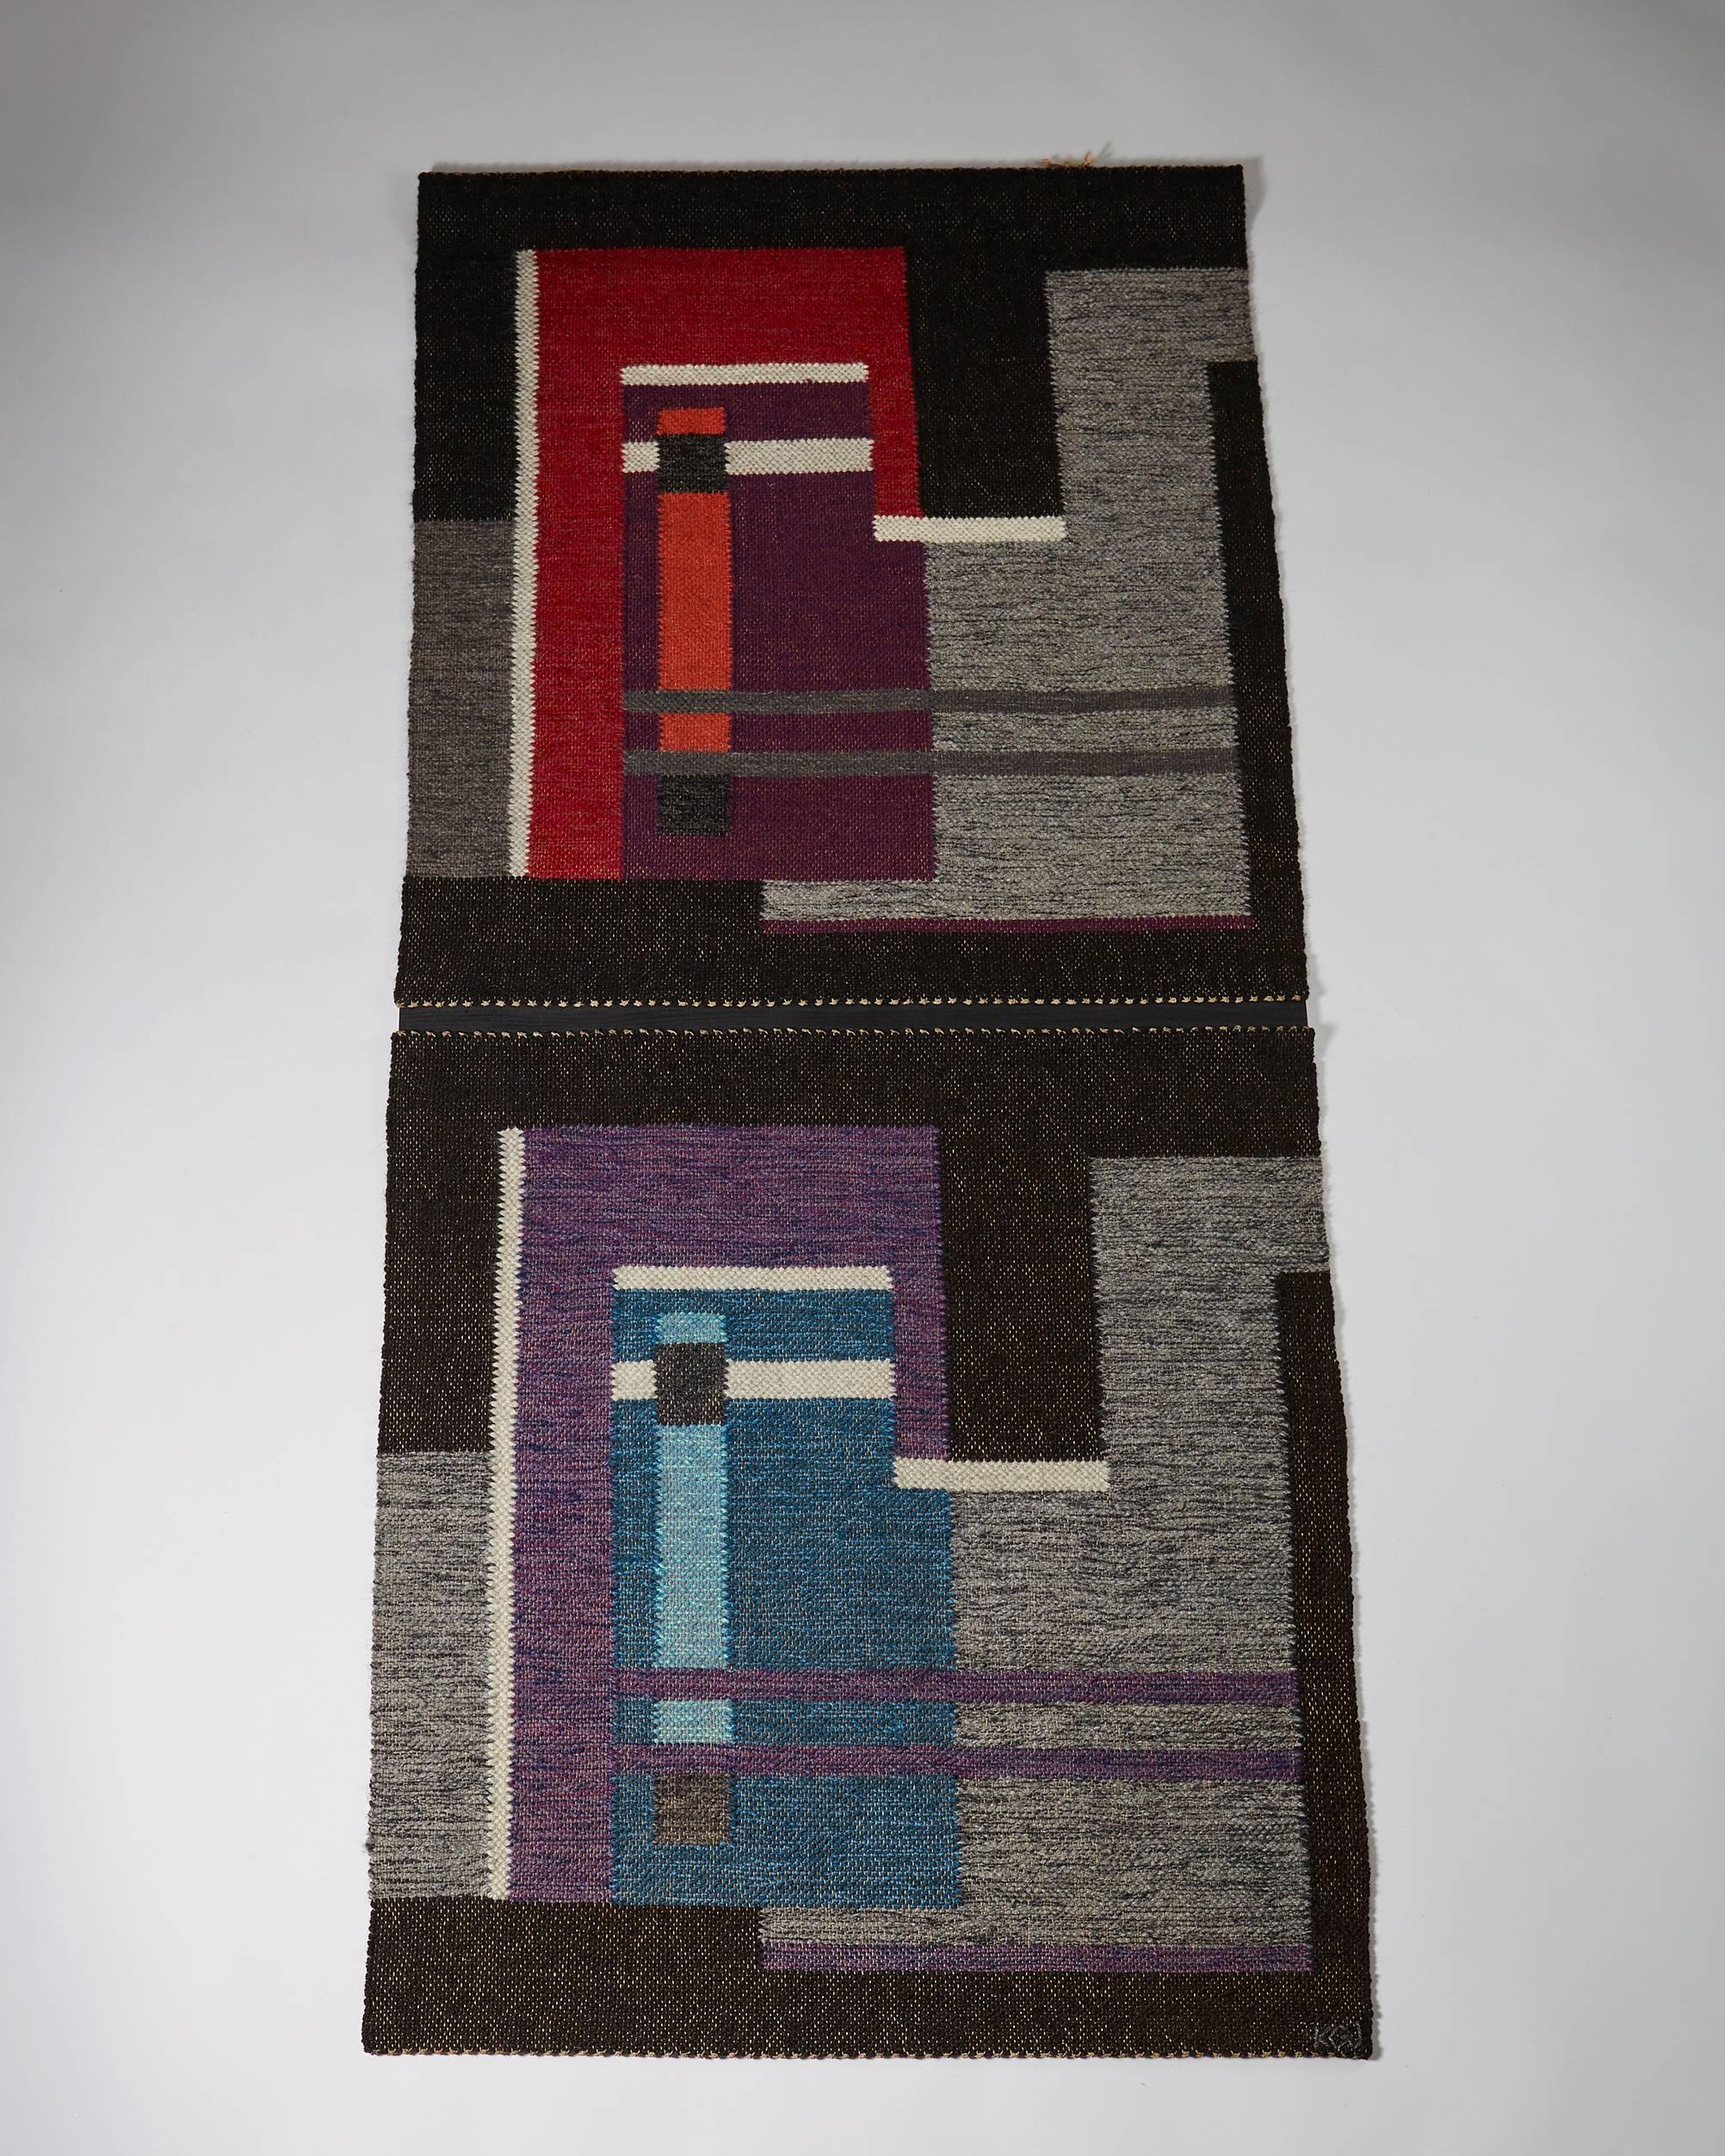 Tapestry “Kölighedens Varme” by Kirsten Gregers Jensen, 
Denmark, 1950s. 
Handwoven wool on wooden panels.

Signed KGL.

Measures: H 185 cm/ 6' 1 1/4